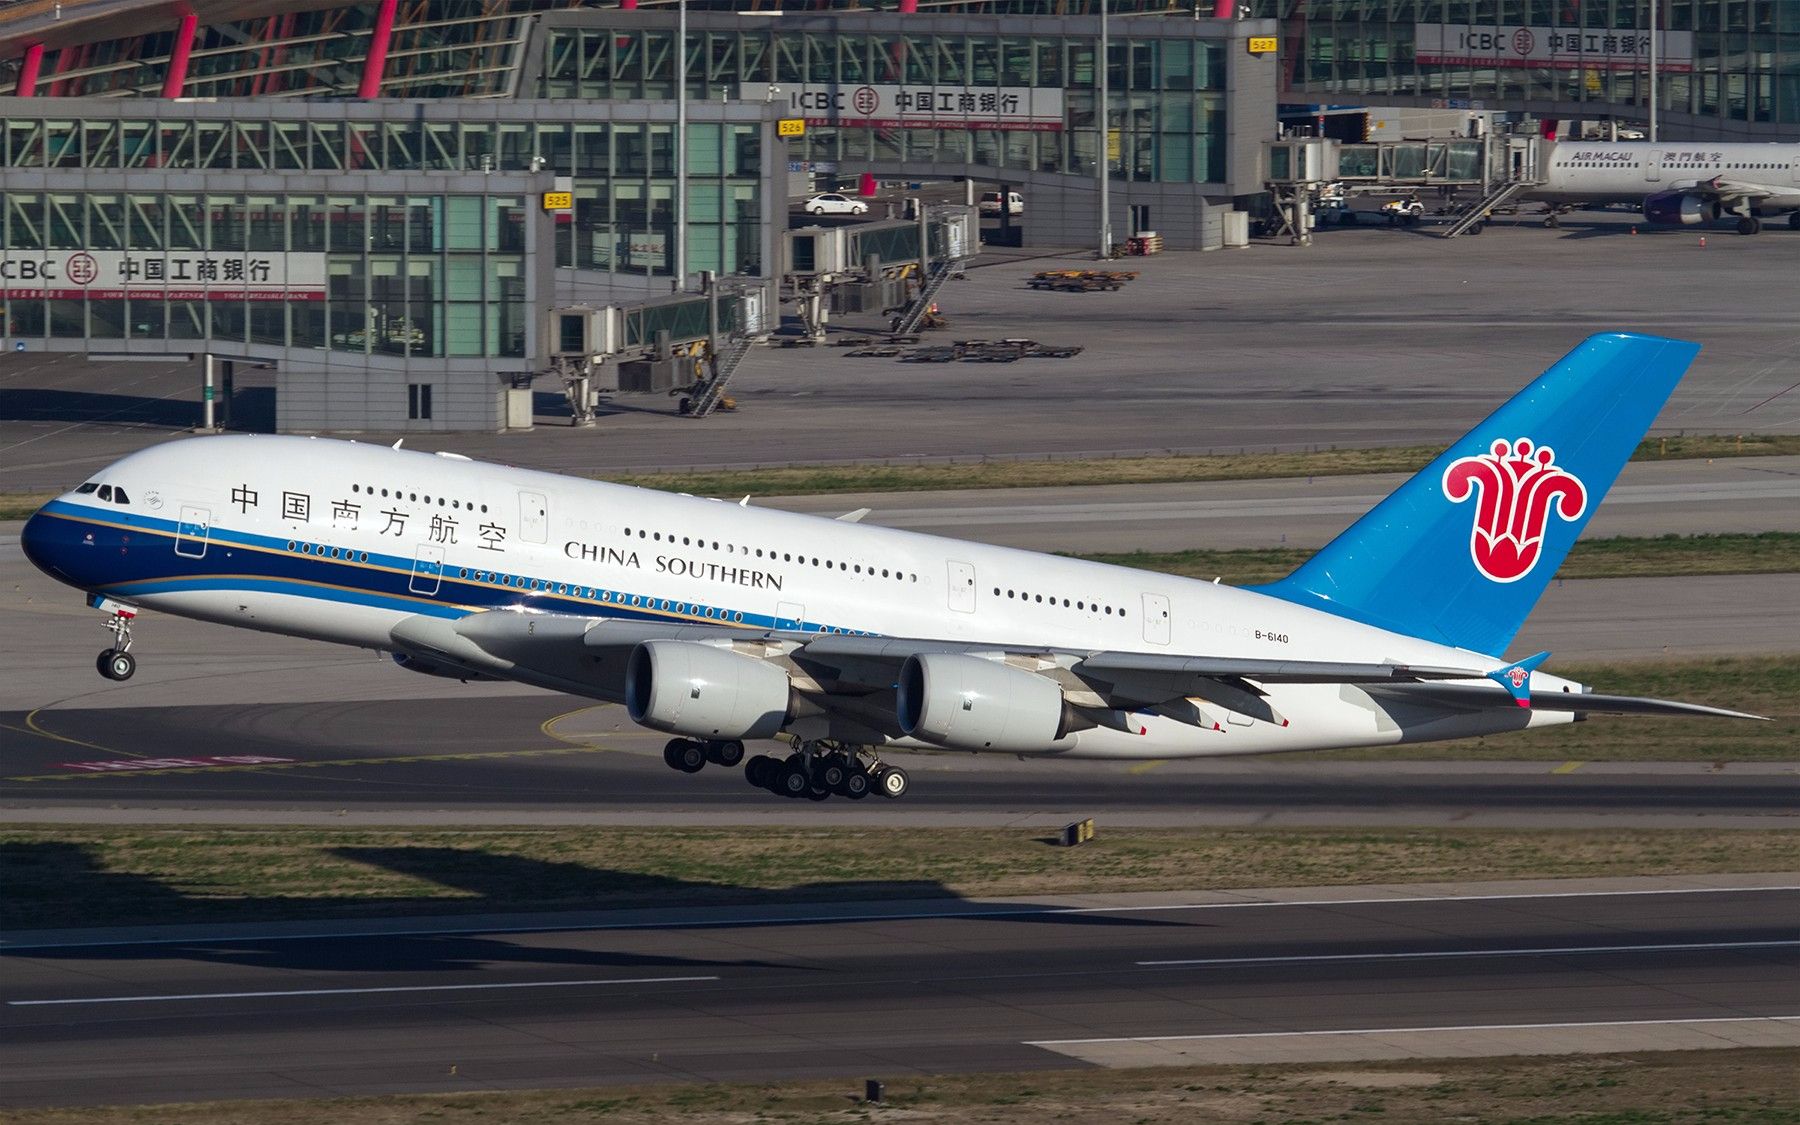 中国南方航空 空客a380客机荷兰史基埔机场平稳降落